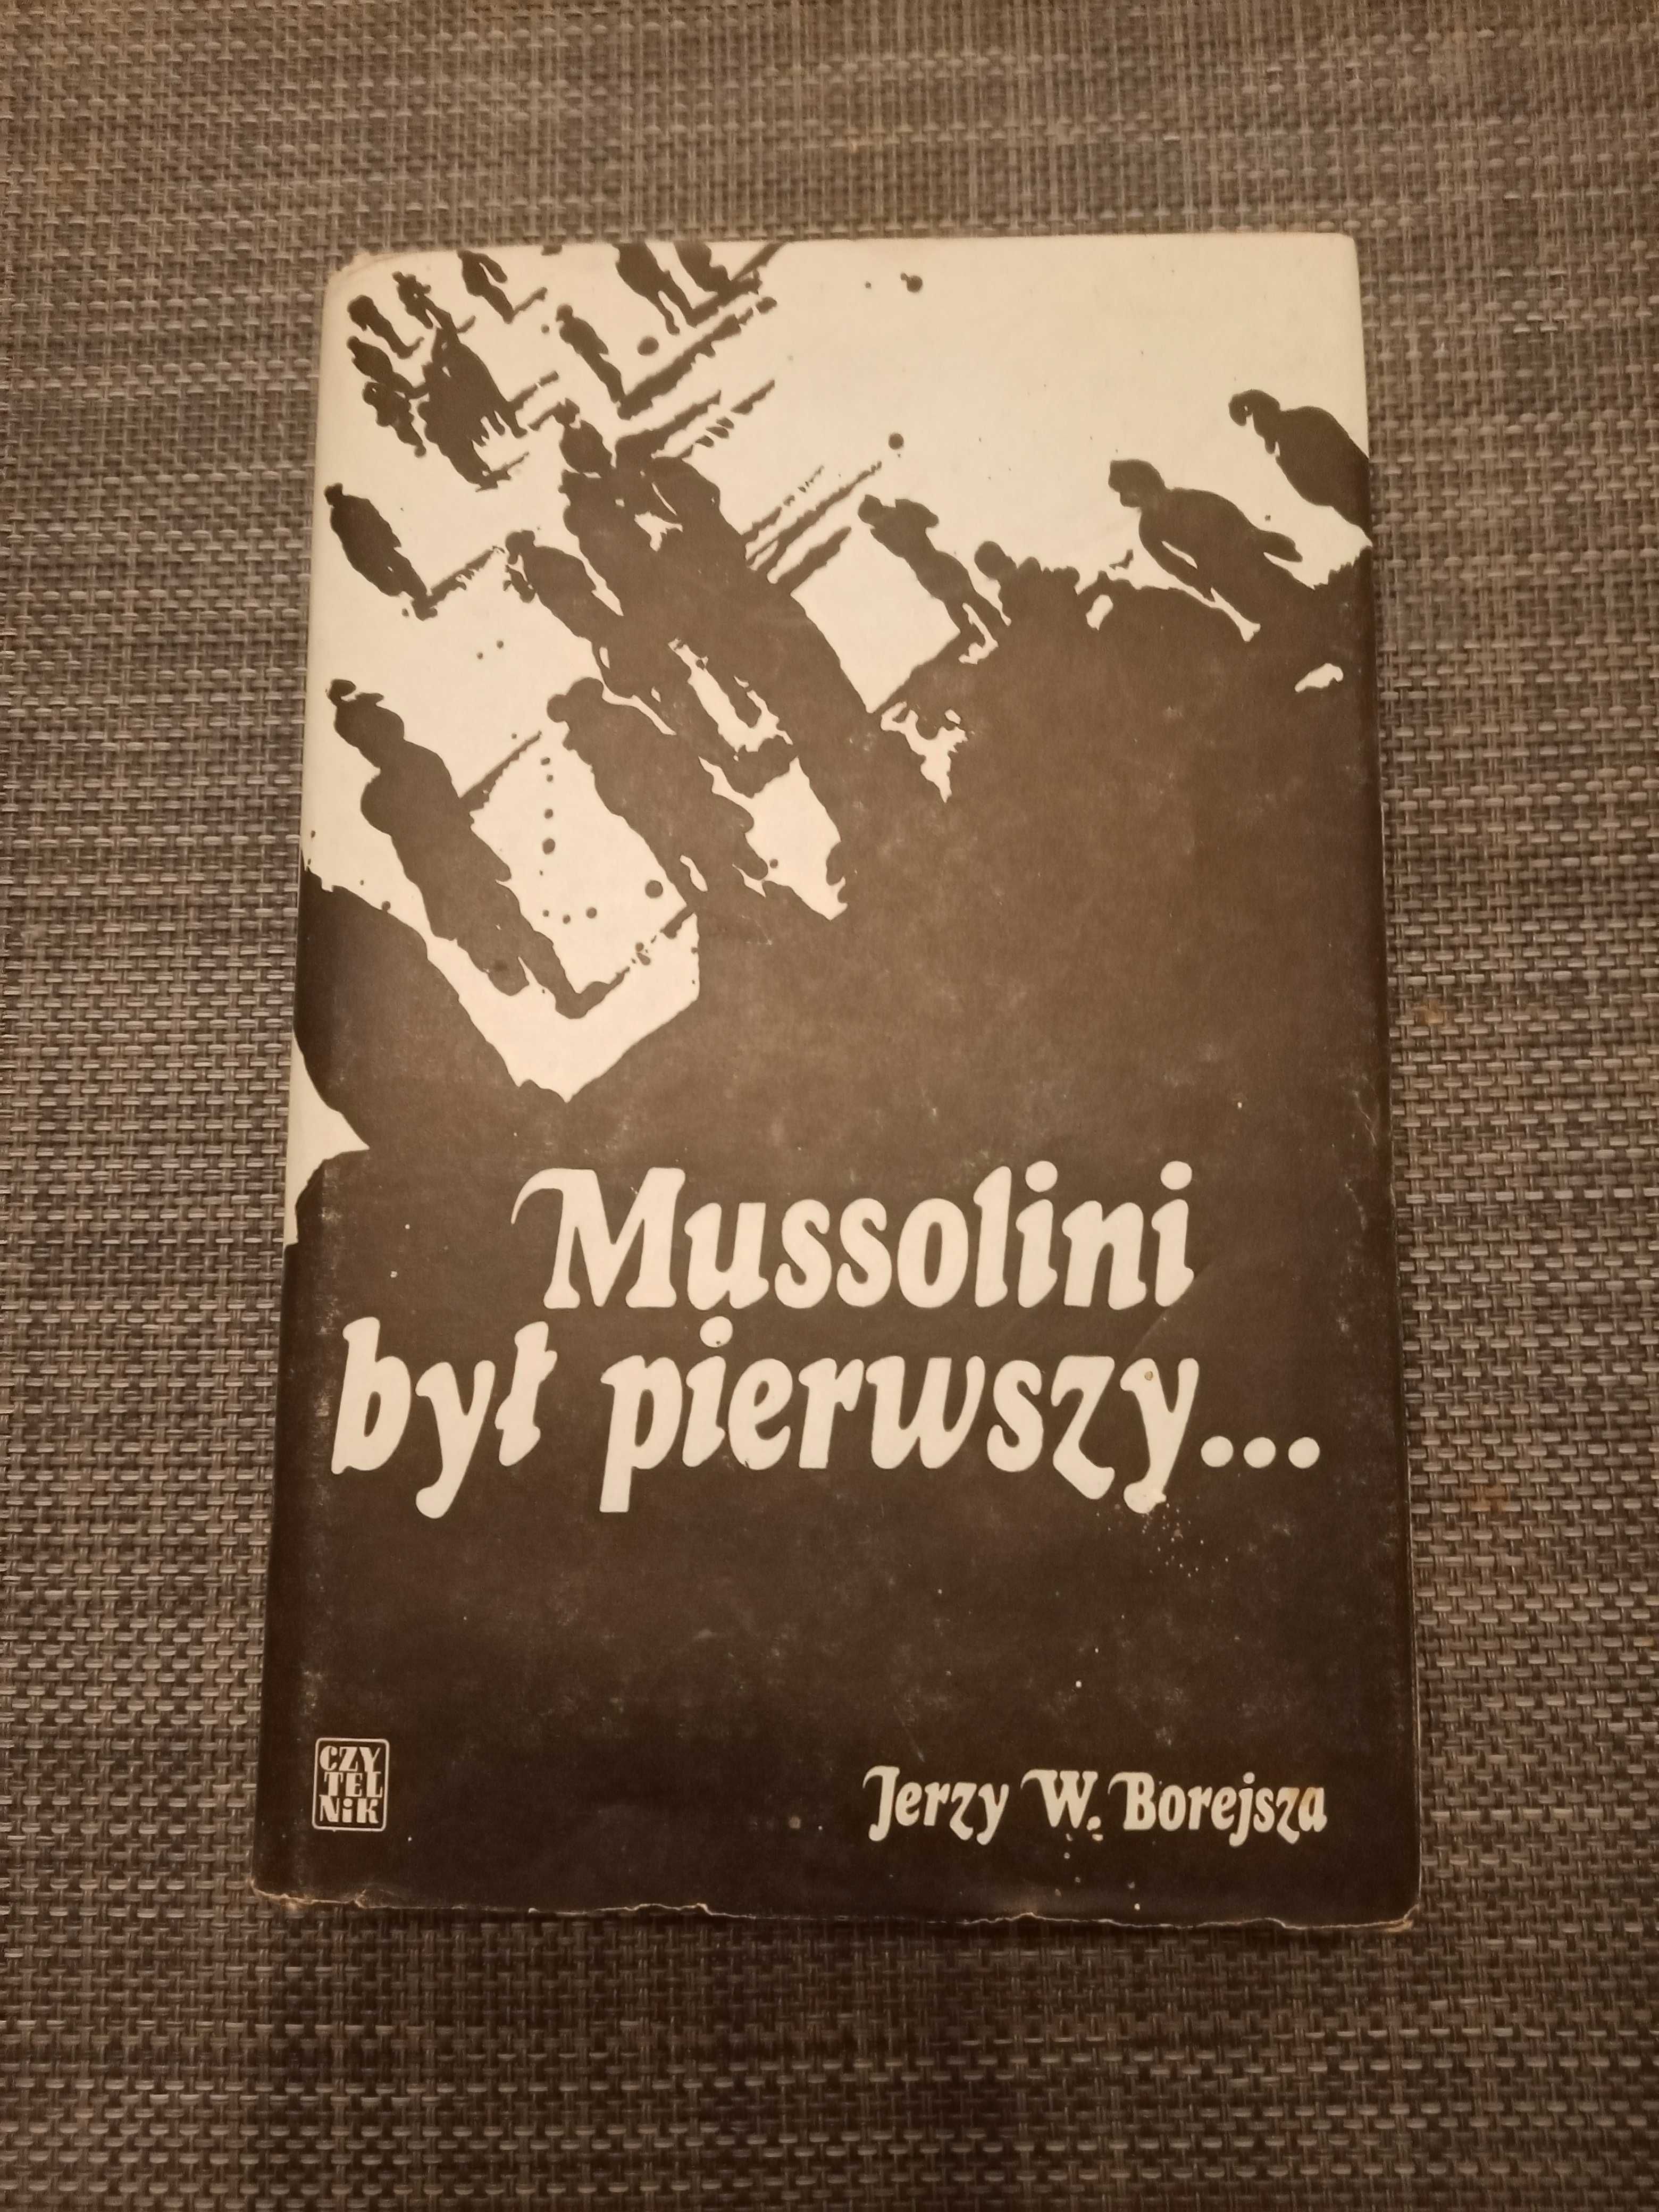 Mussolini był pierwszy... J.W. Borejsza